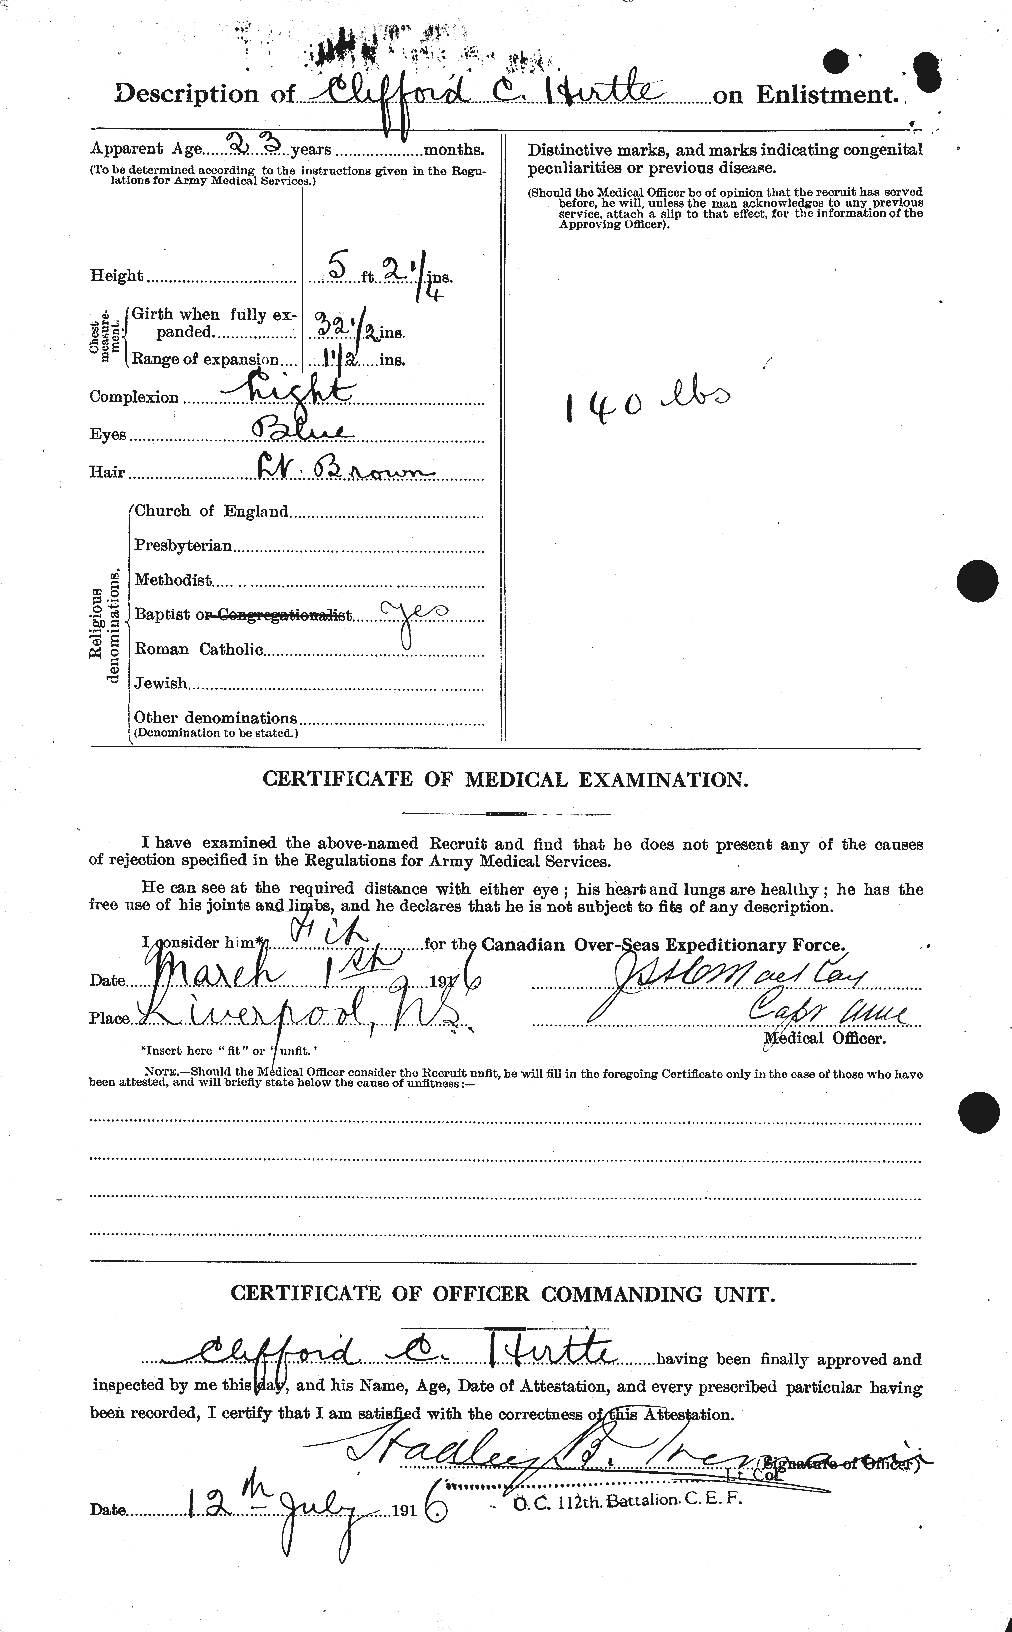 Dossiers du Personnel de la Première Guerre mondiale - CEC 397331b